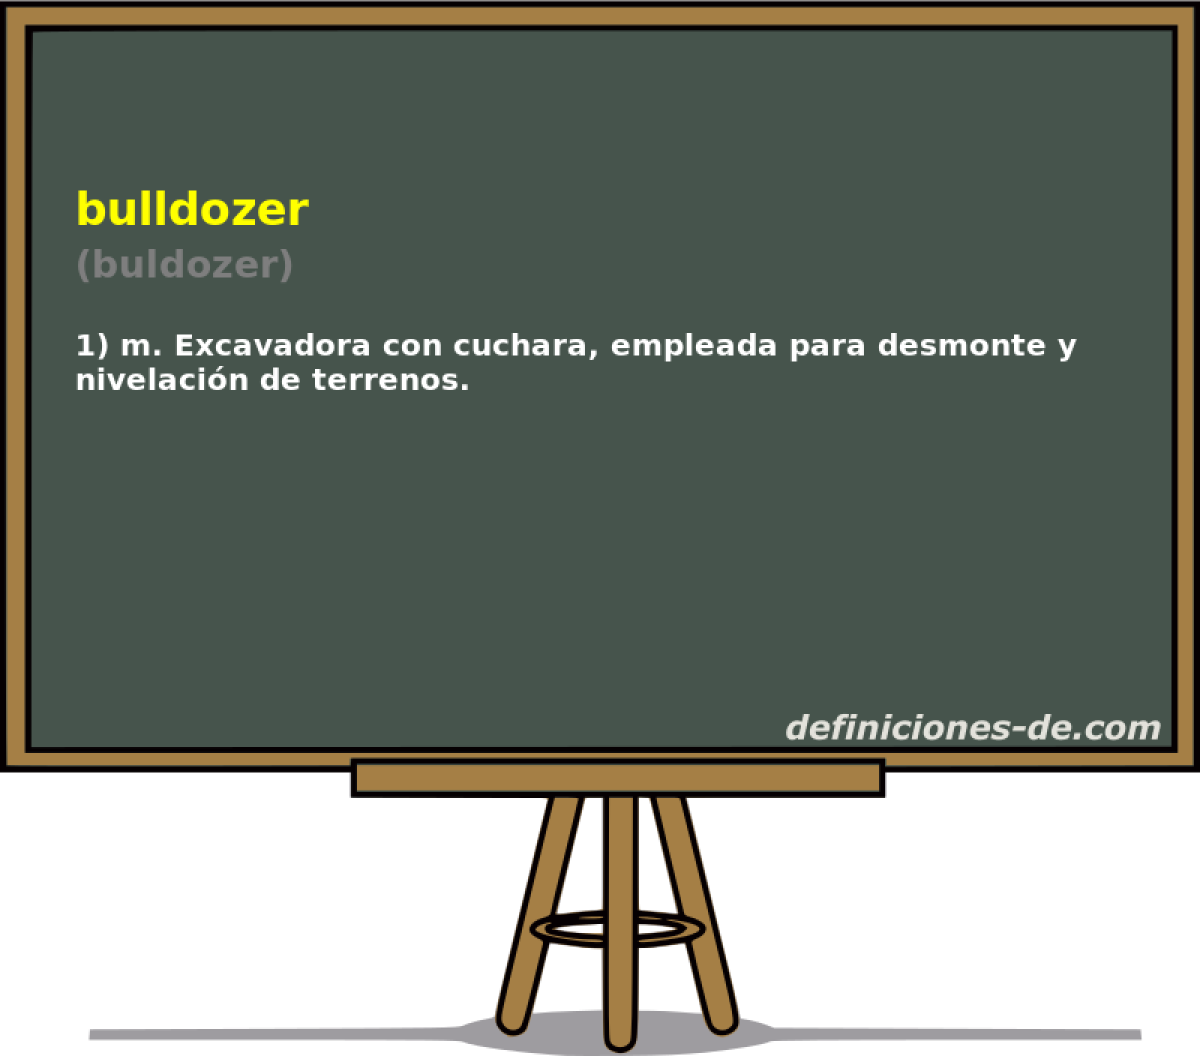 bulldozer (buldozer)